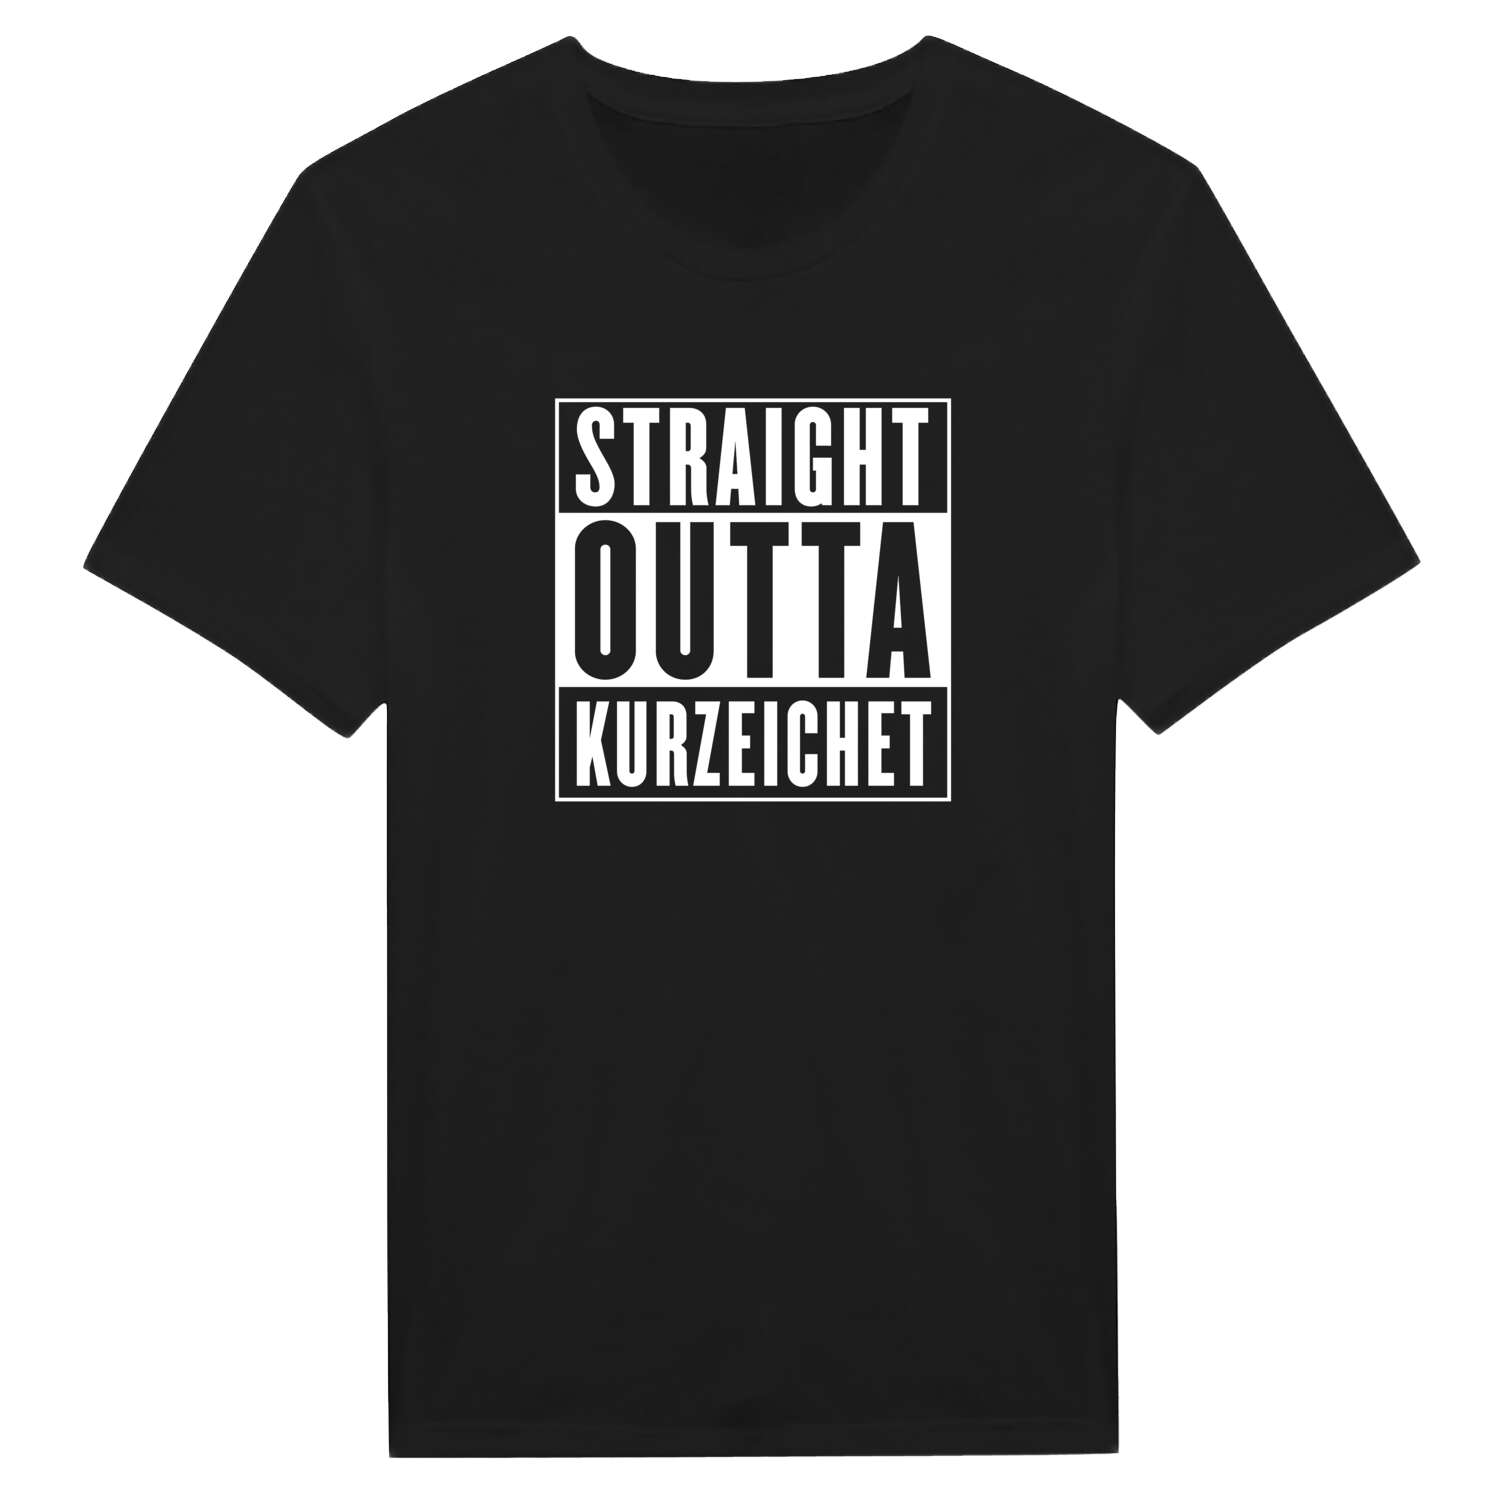 Kurzeichet T-Shirt »Straight Outta«